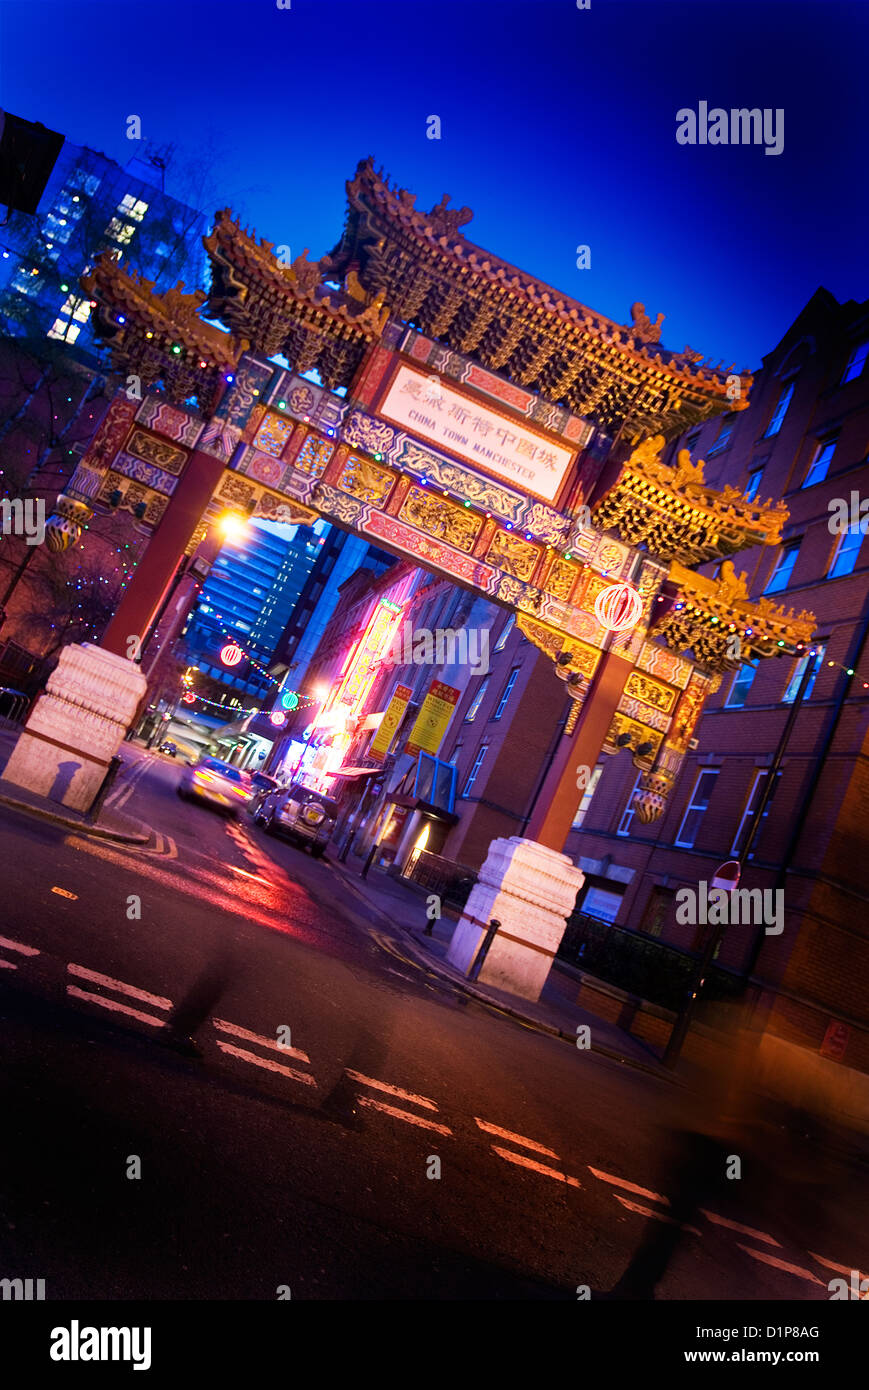 Gate cinese Manchester, di notte, confusione e dal trambusto della vita cittadina, ristorante, Chinatown Foto Stock